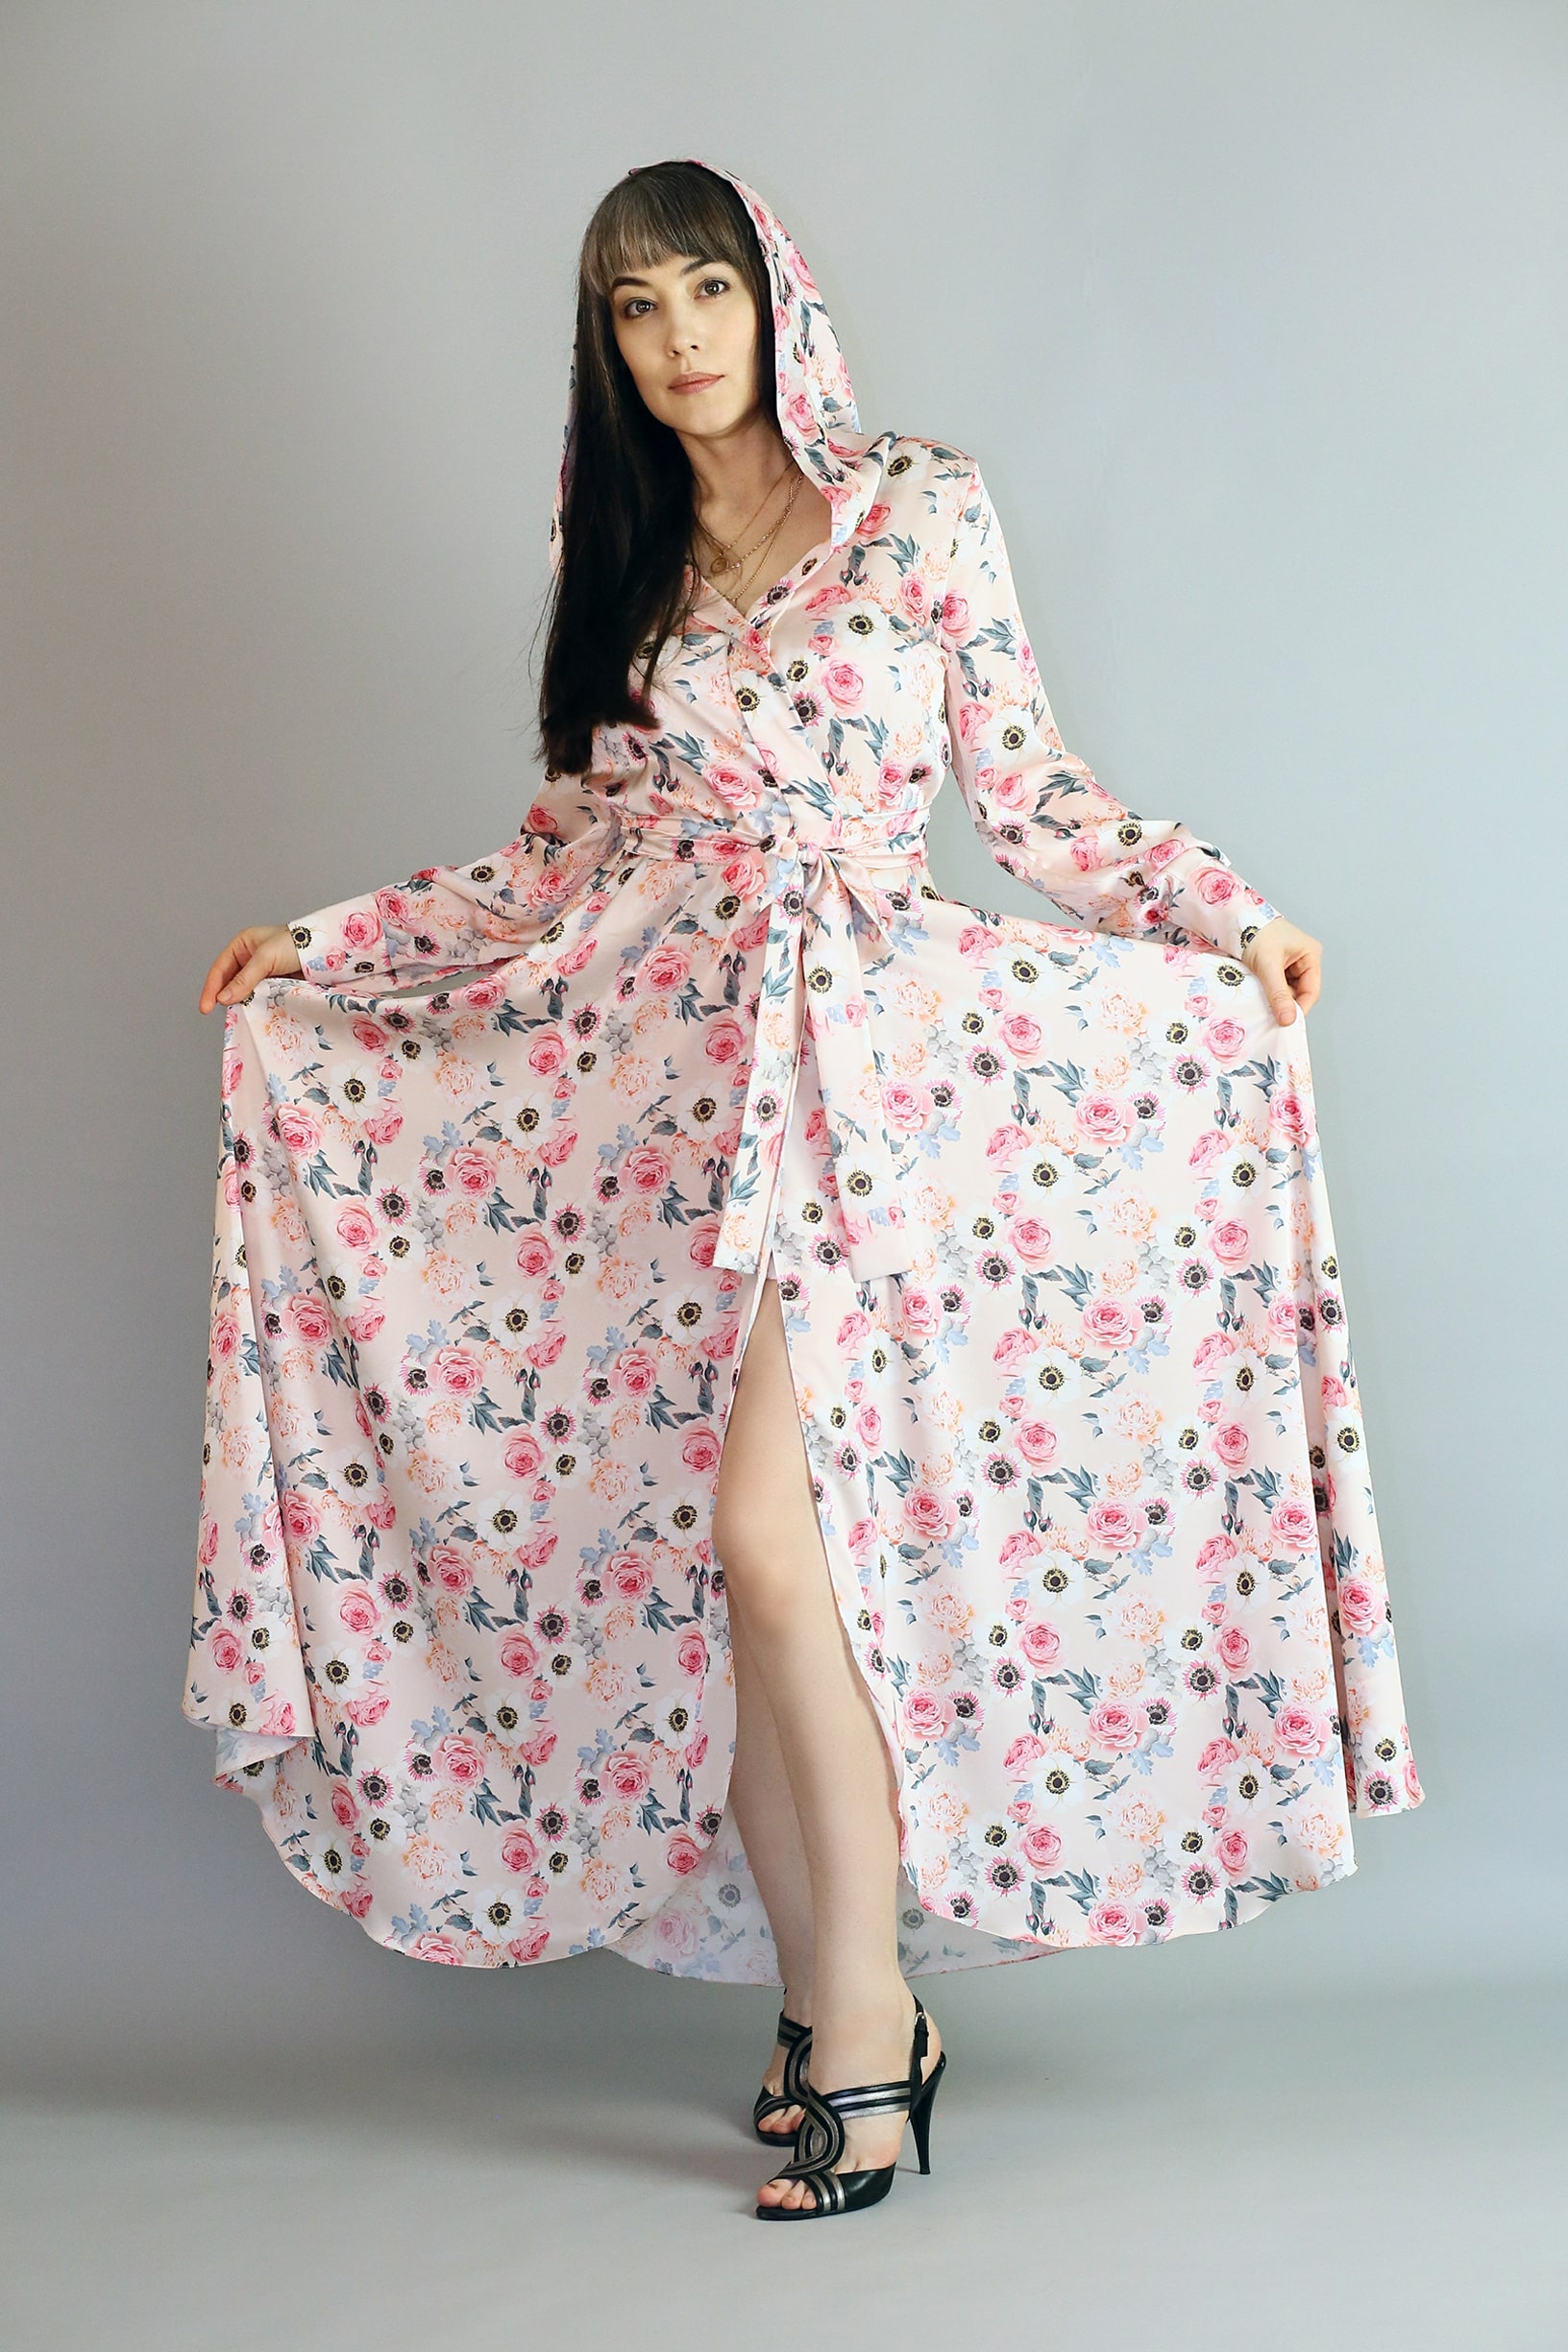 Платье на запа́х с розовым цветочным принтом